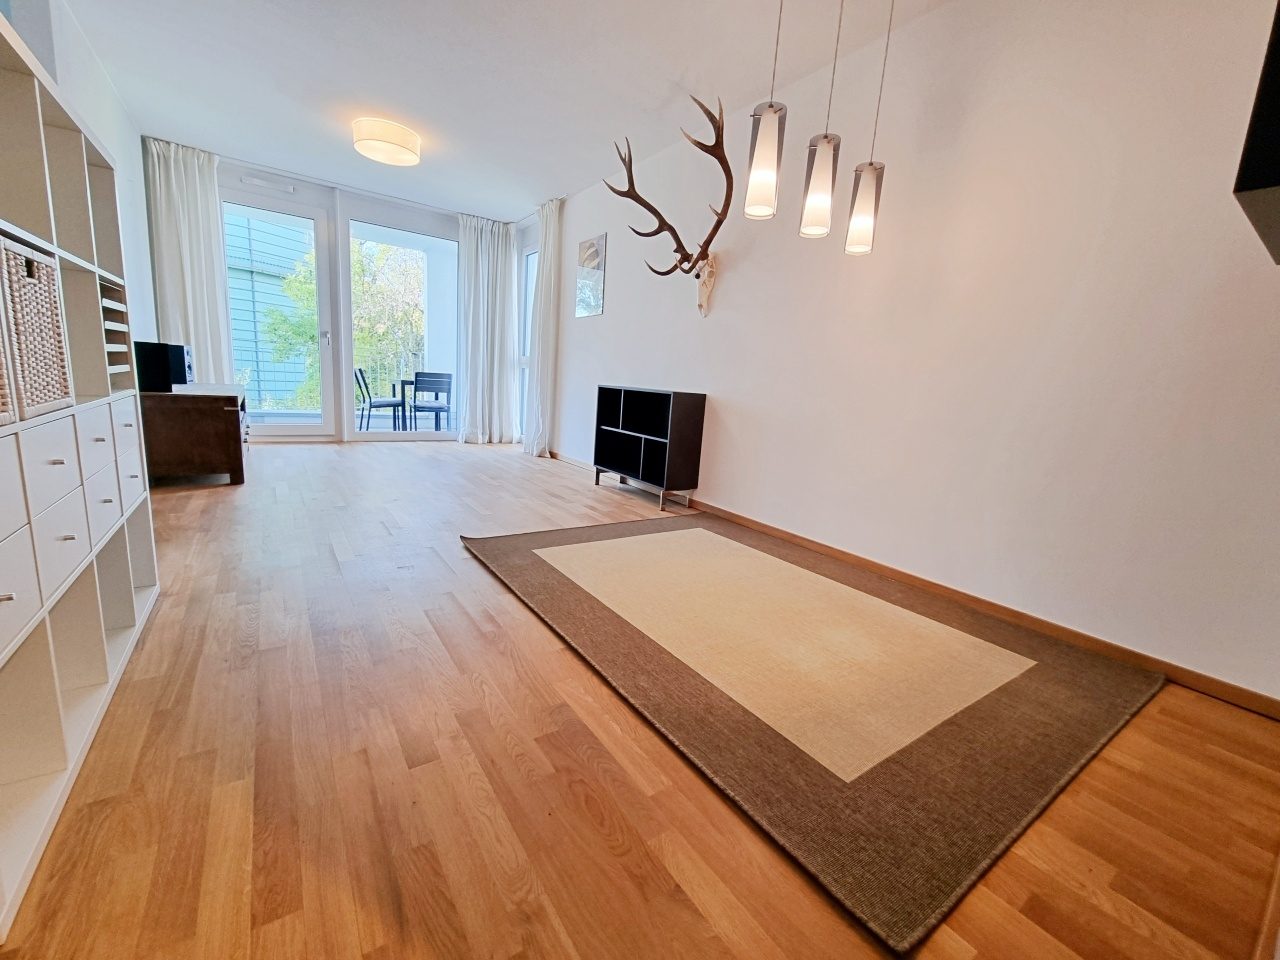 Immobilienangebot - Regensburg - Alle - Neuwertige 2-Zimmer-Wohnung mit großzügiger Loggia in ruhiger Lage im Candis-Areal! Frei!